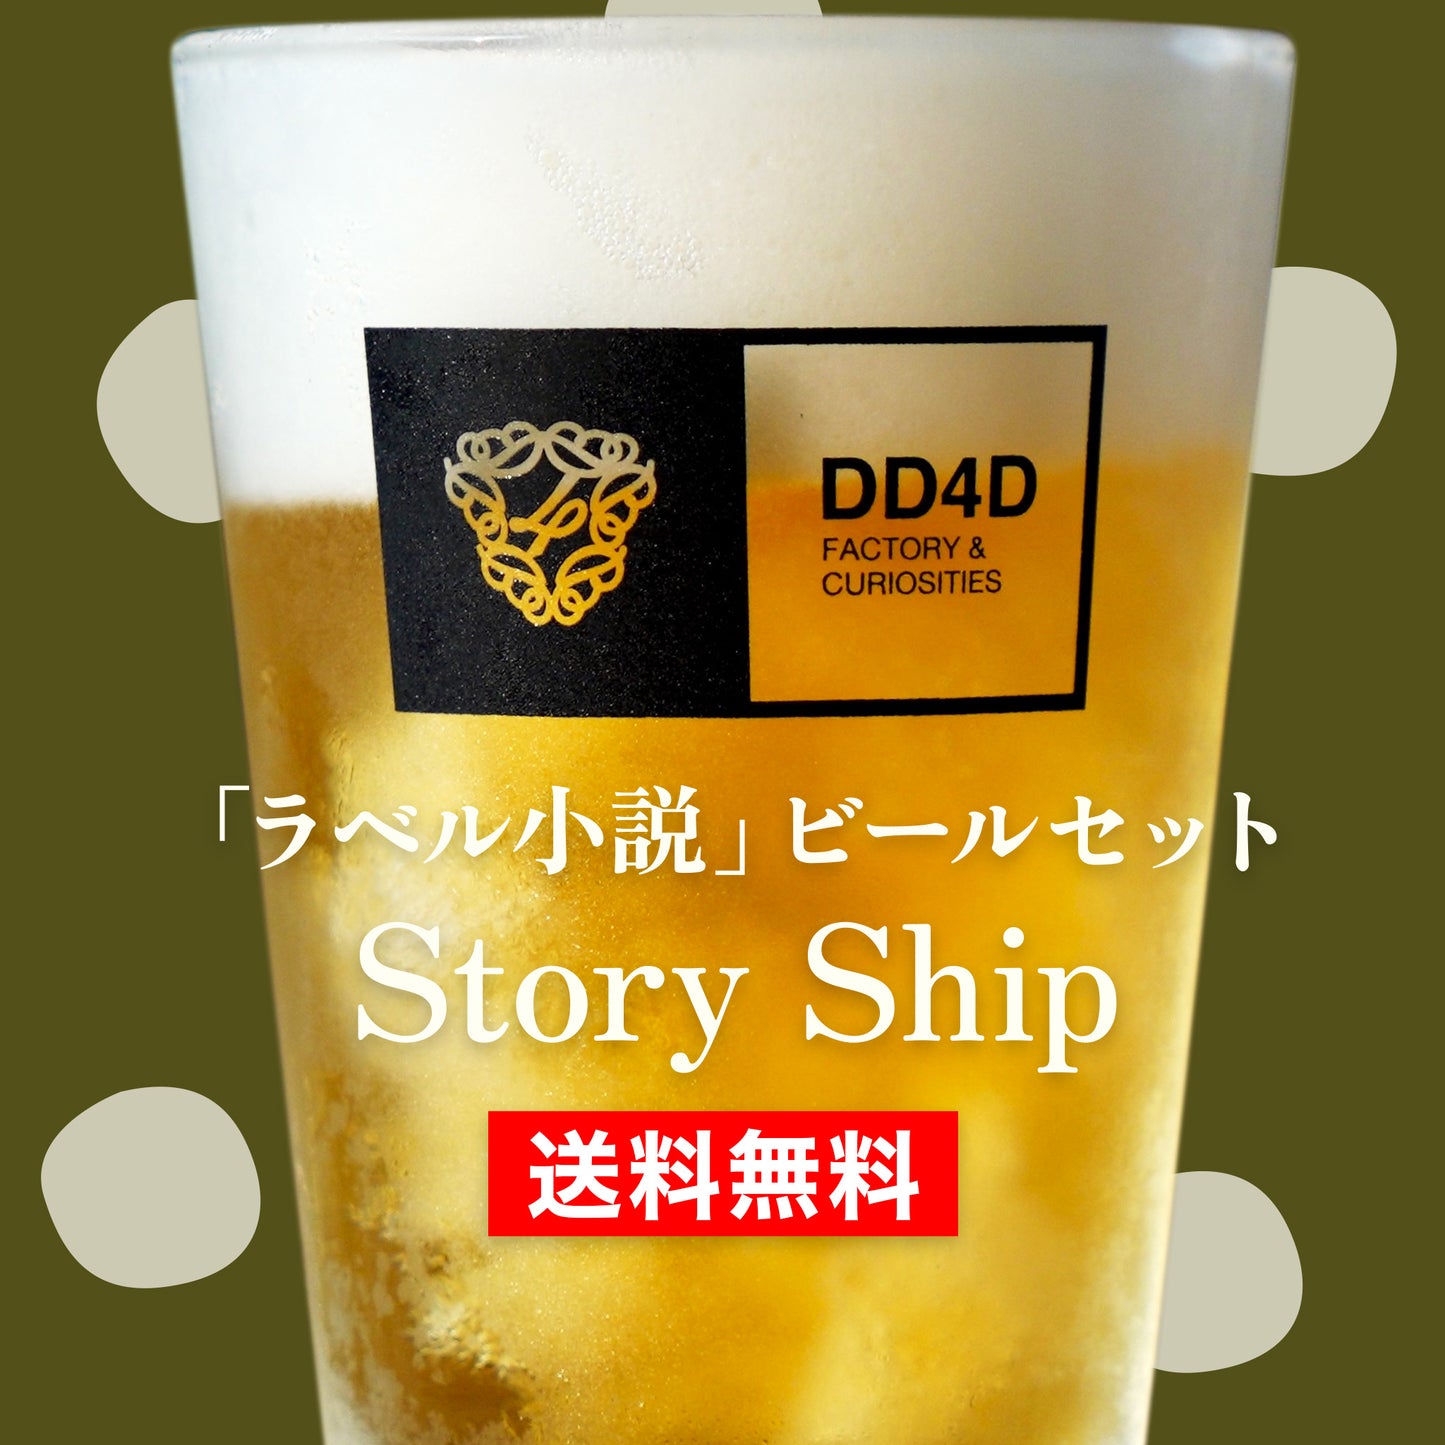 「ラベル小説」ビールセット "Story Ship" | ショートショート作家 田丸雅智 × DD4D BREWING